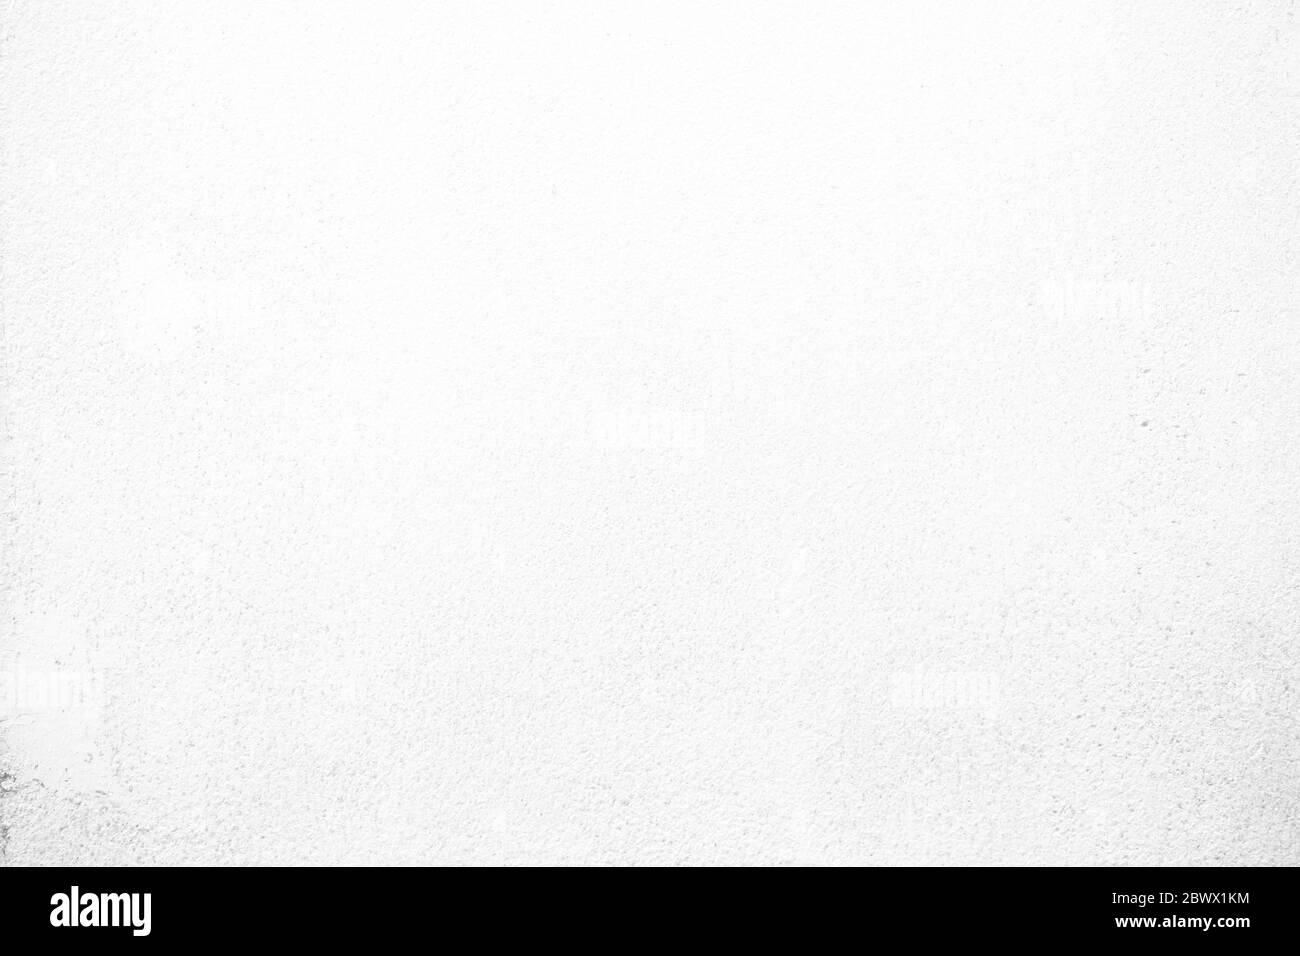 White Concrete Wall Texture Background. Stock Photo